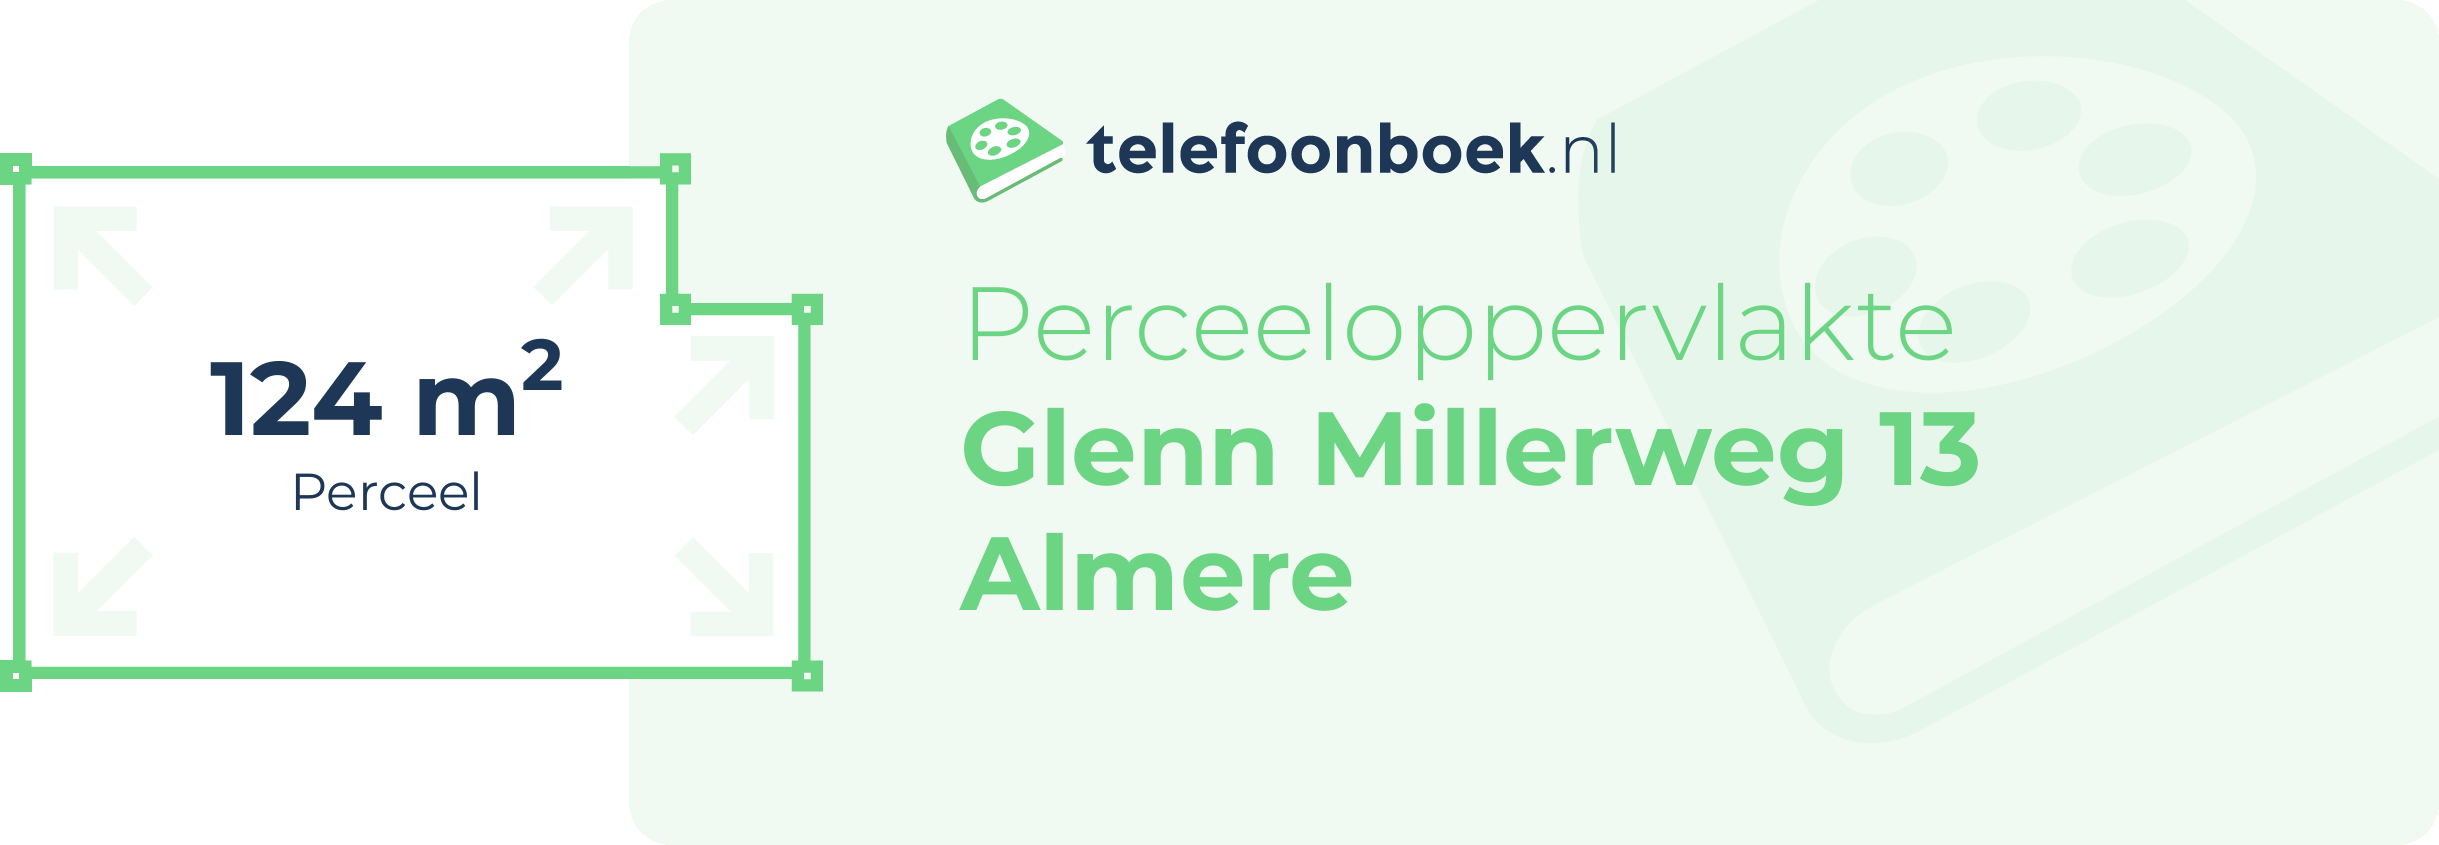 Perceeloppervlakte Glenn Millerweg 13 Almere